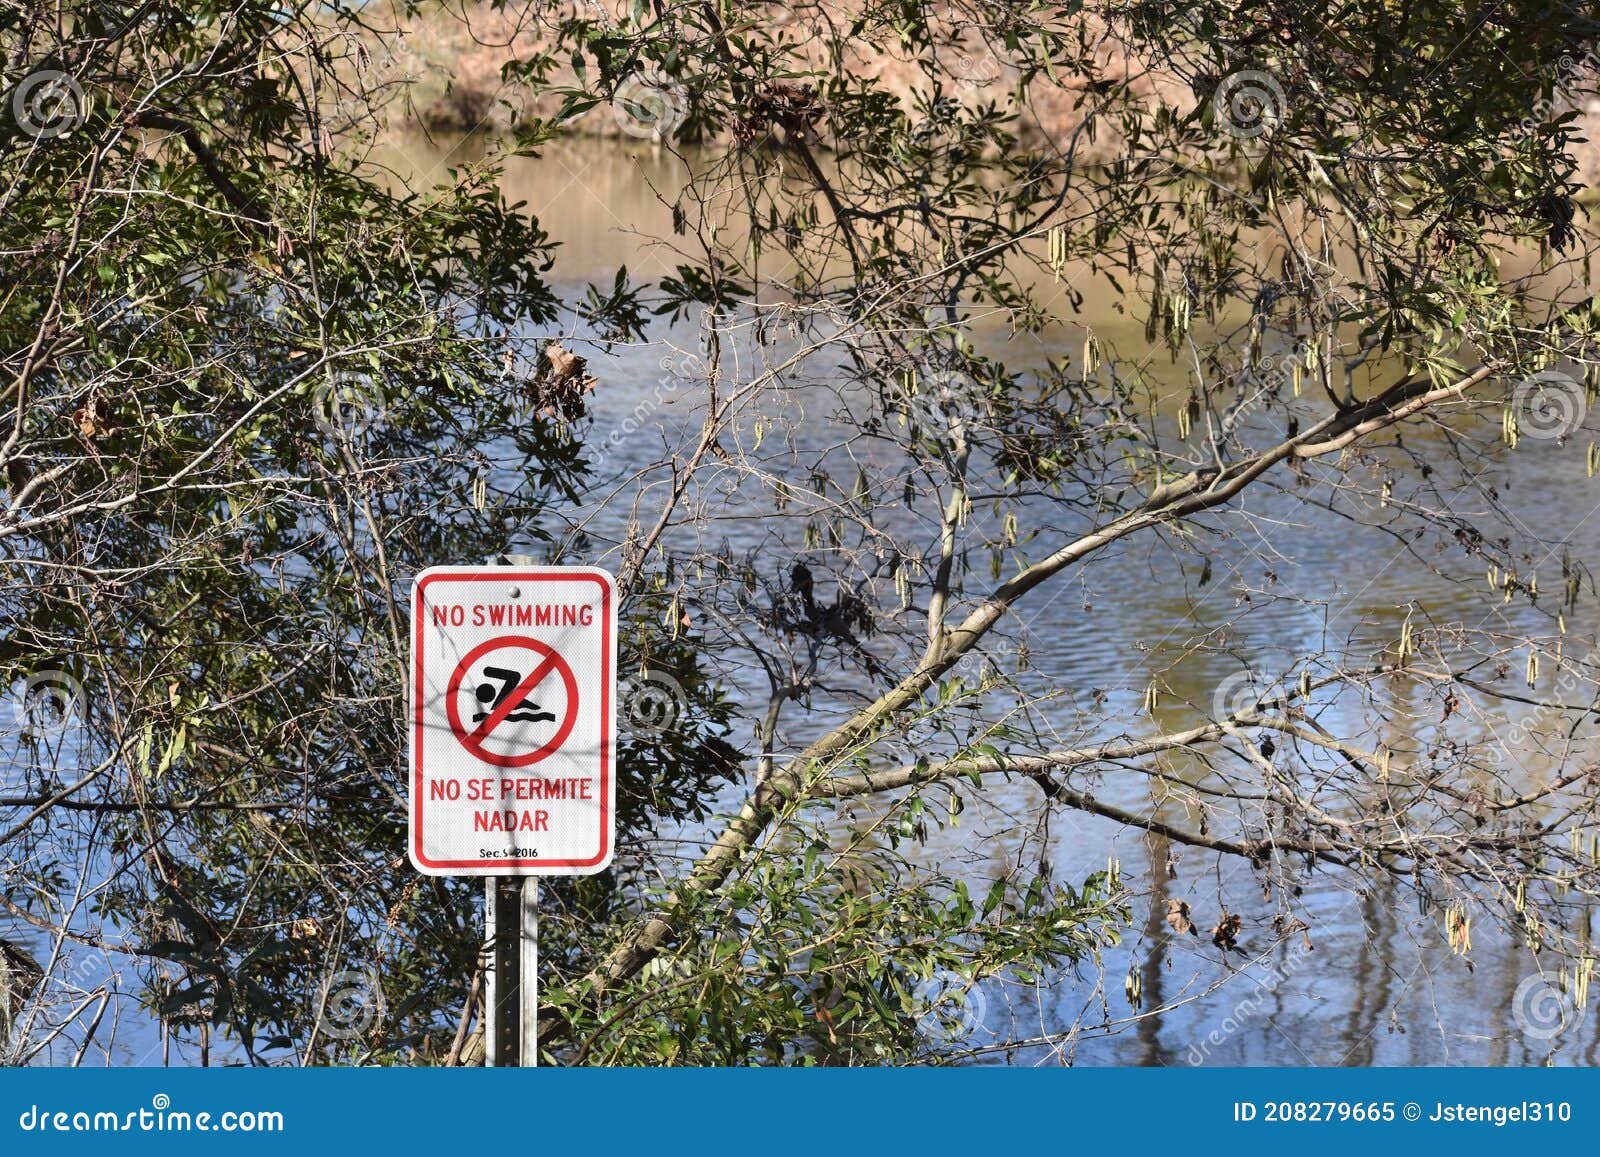 no swimming  no se permite nadar sign